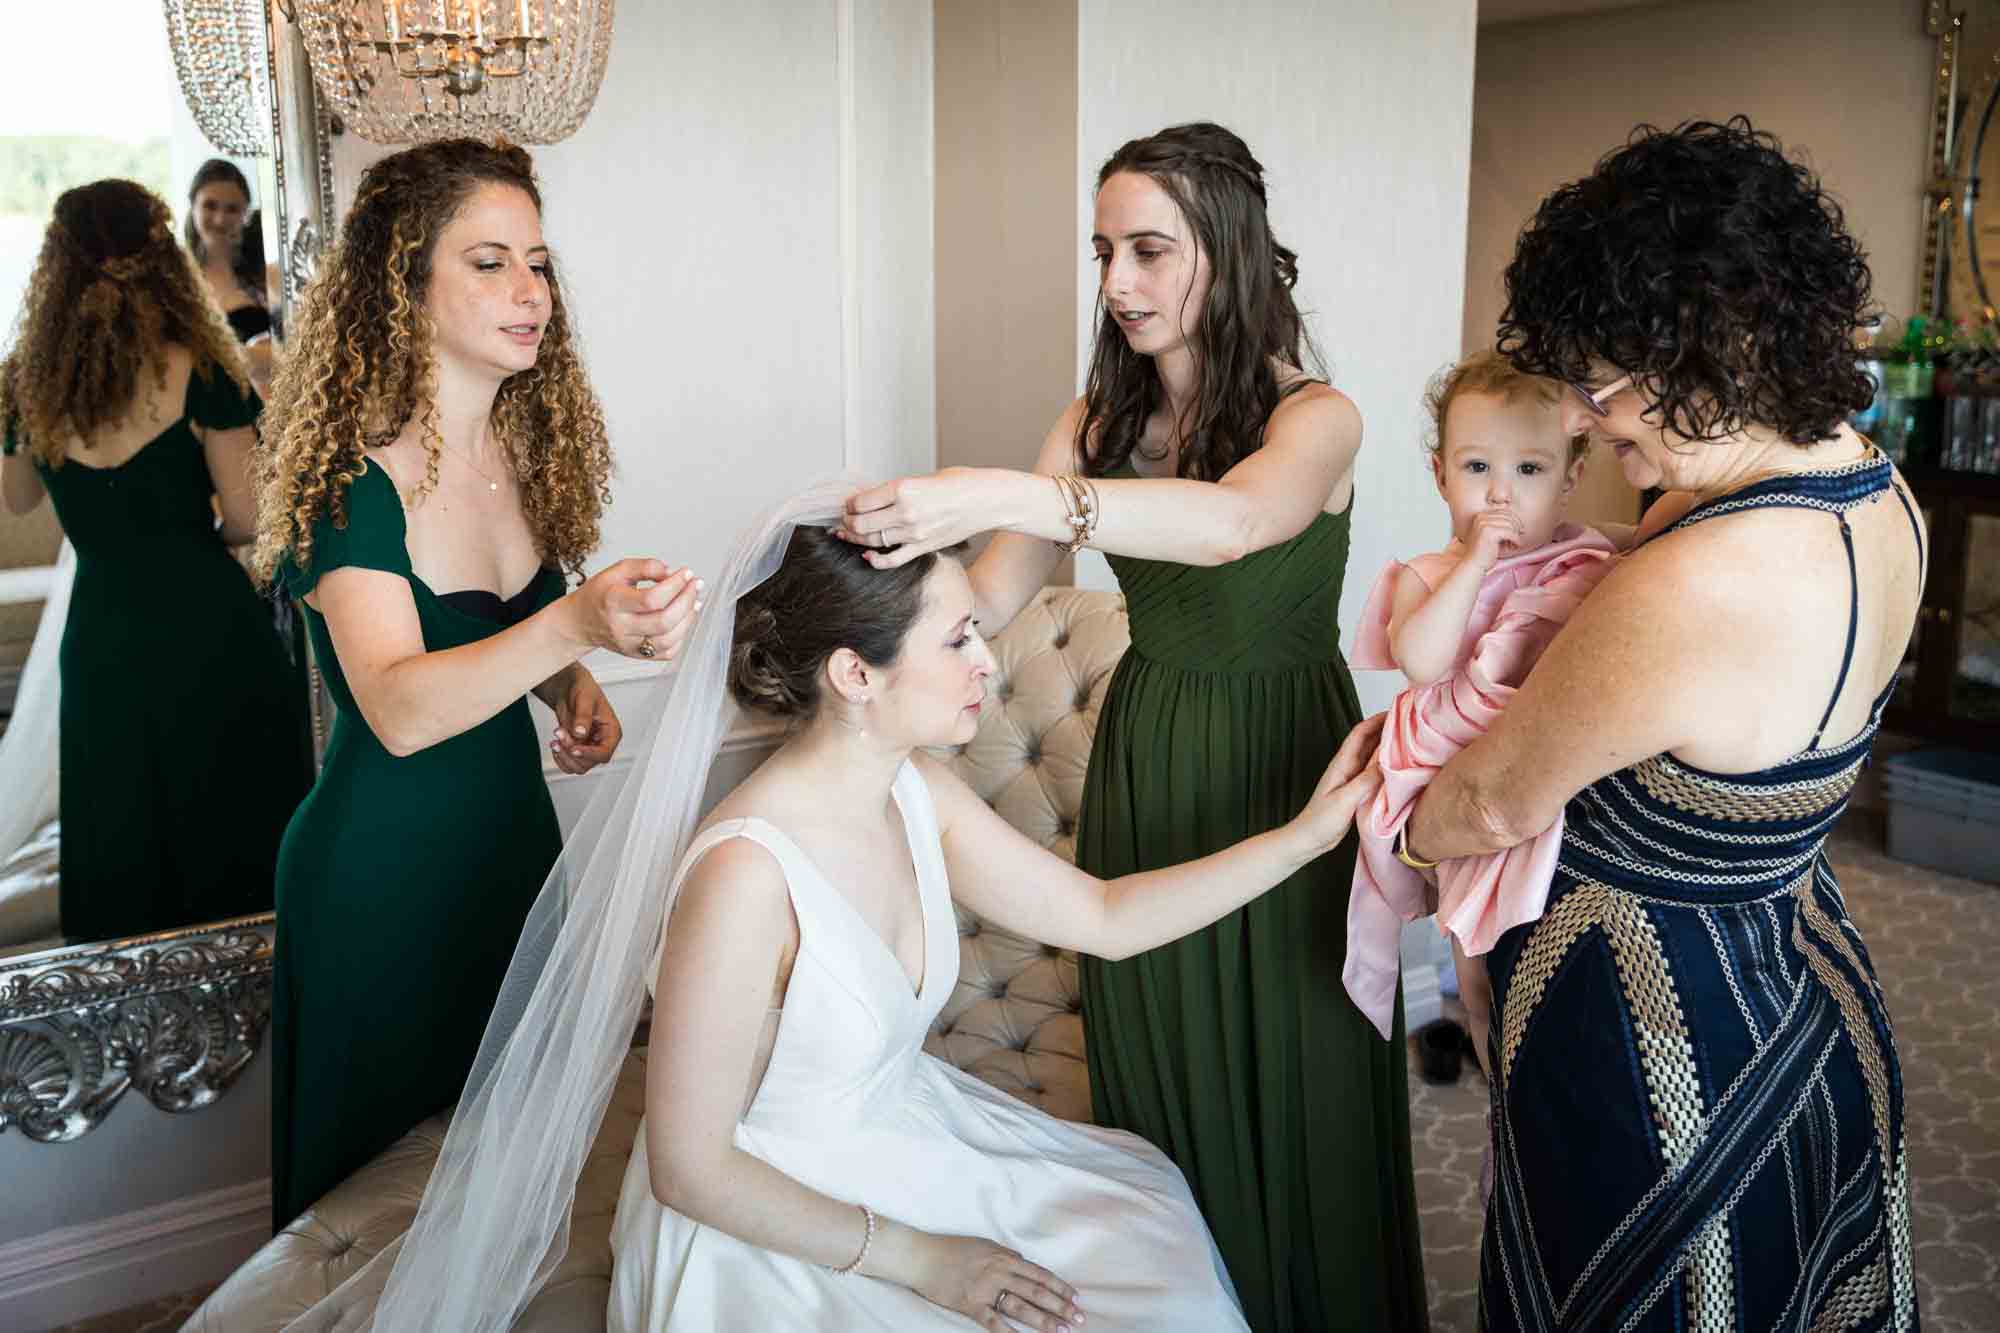 Glen Island Harbour Club wedding photos of bridesmaids adjust bride's veil as bride pets baby